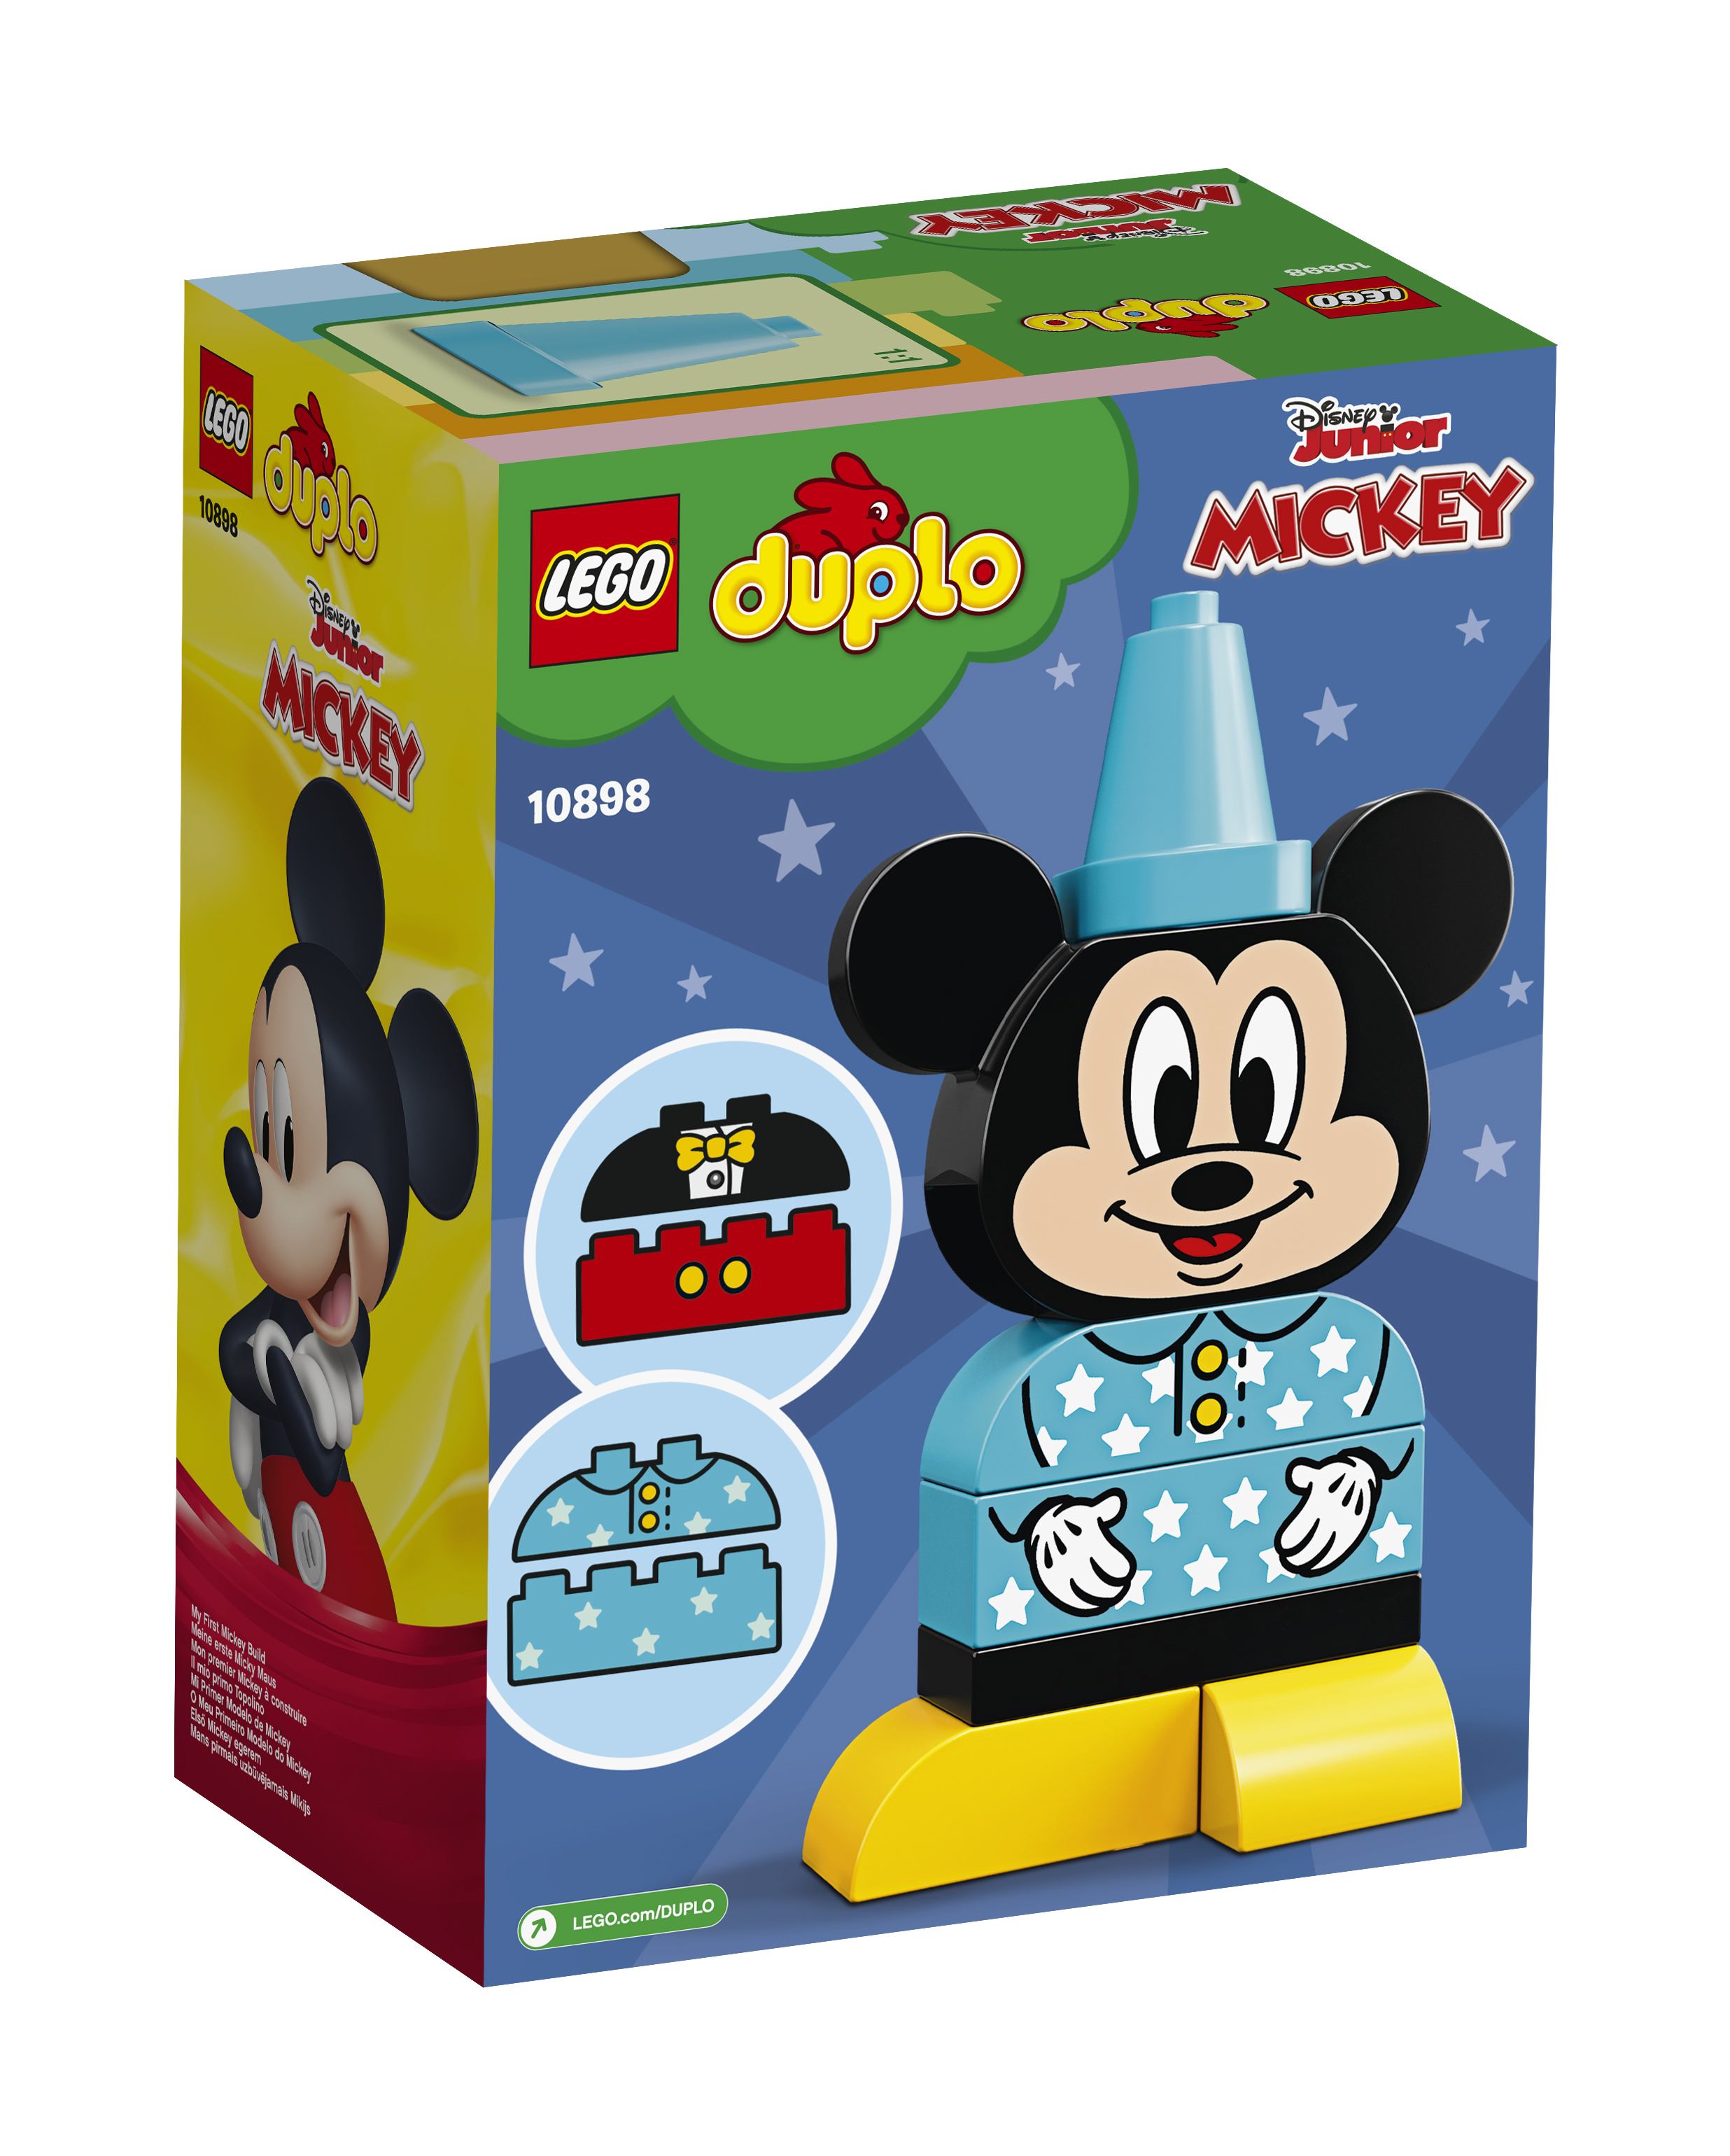 LEGO DUPLO 10898 10897 Meine erste Minnie Maus und Micky Maus N1/19 